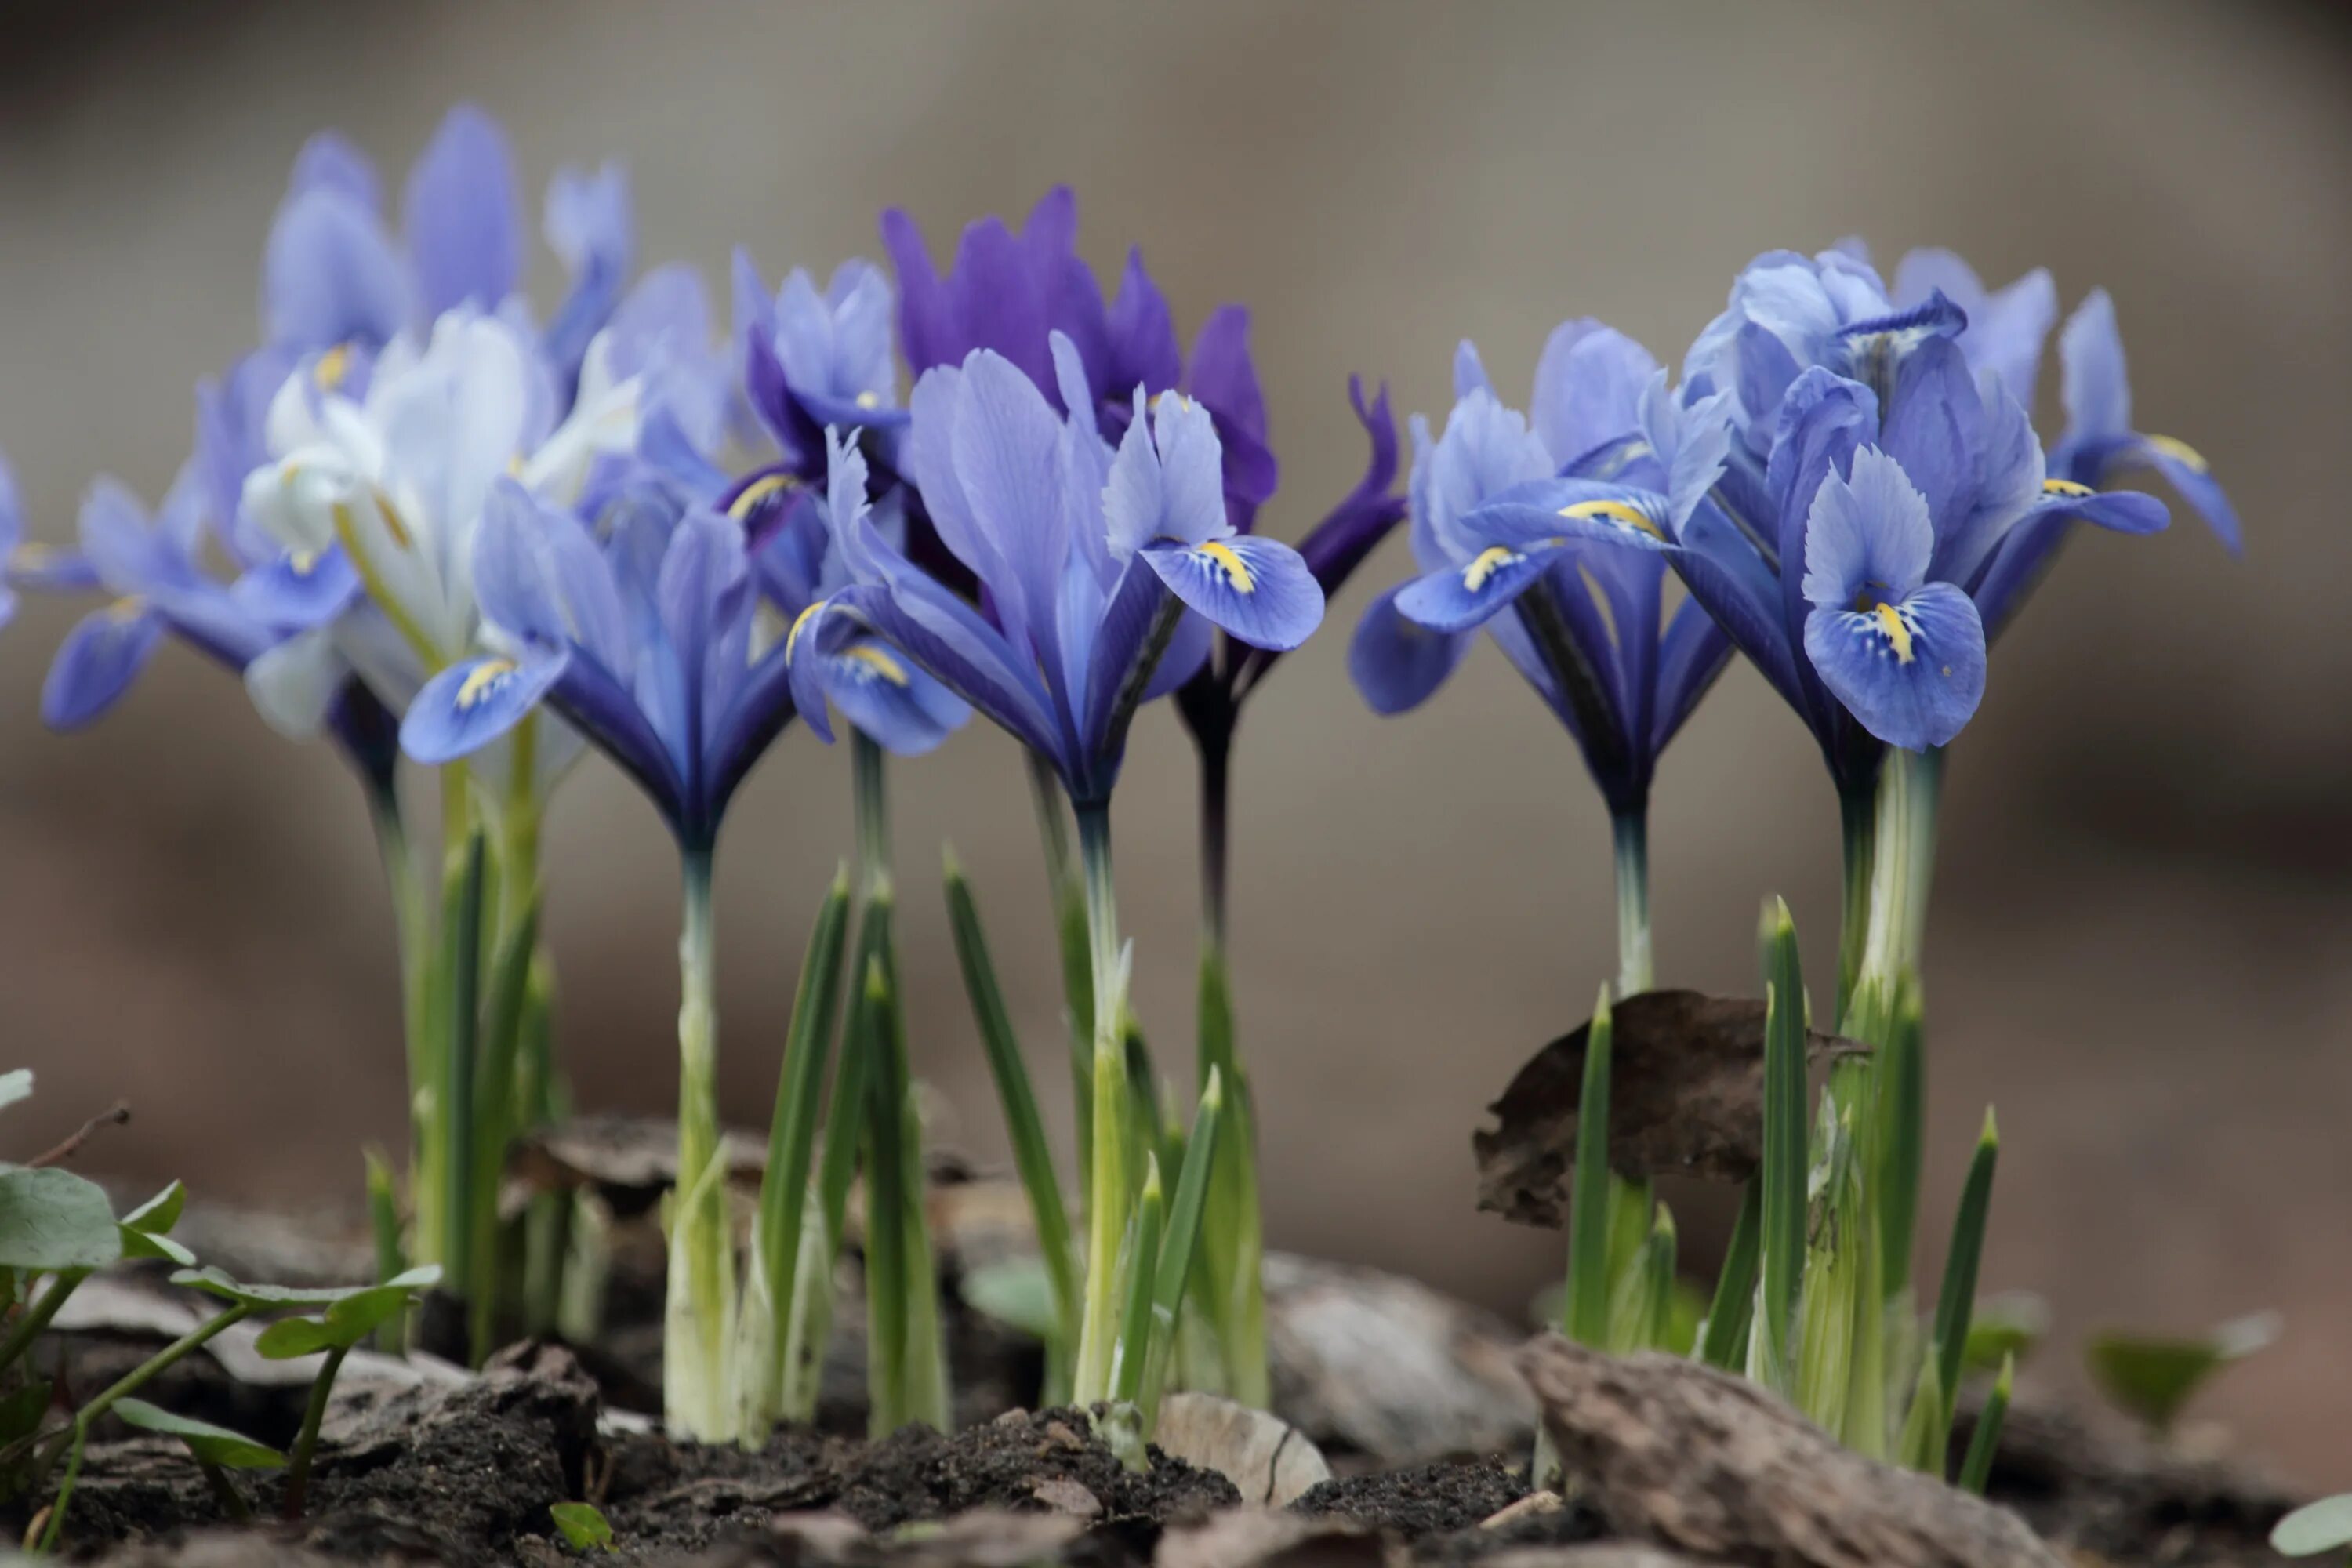 Первоцветы (подснежники, крокусы, гиацинты).. Ирисы первоцветы. Ирис весенний первоцвет. Весенние первоцветы синие.